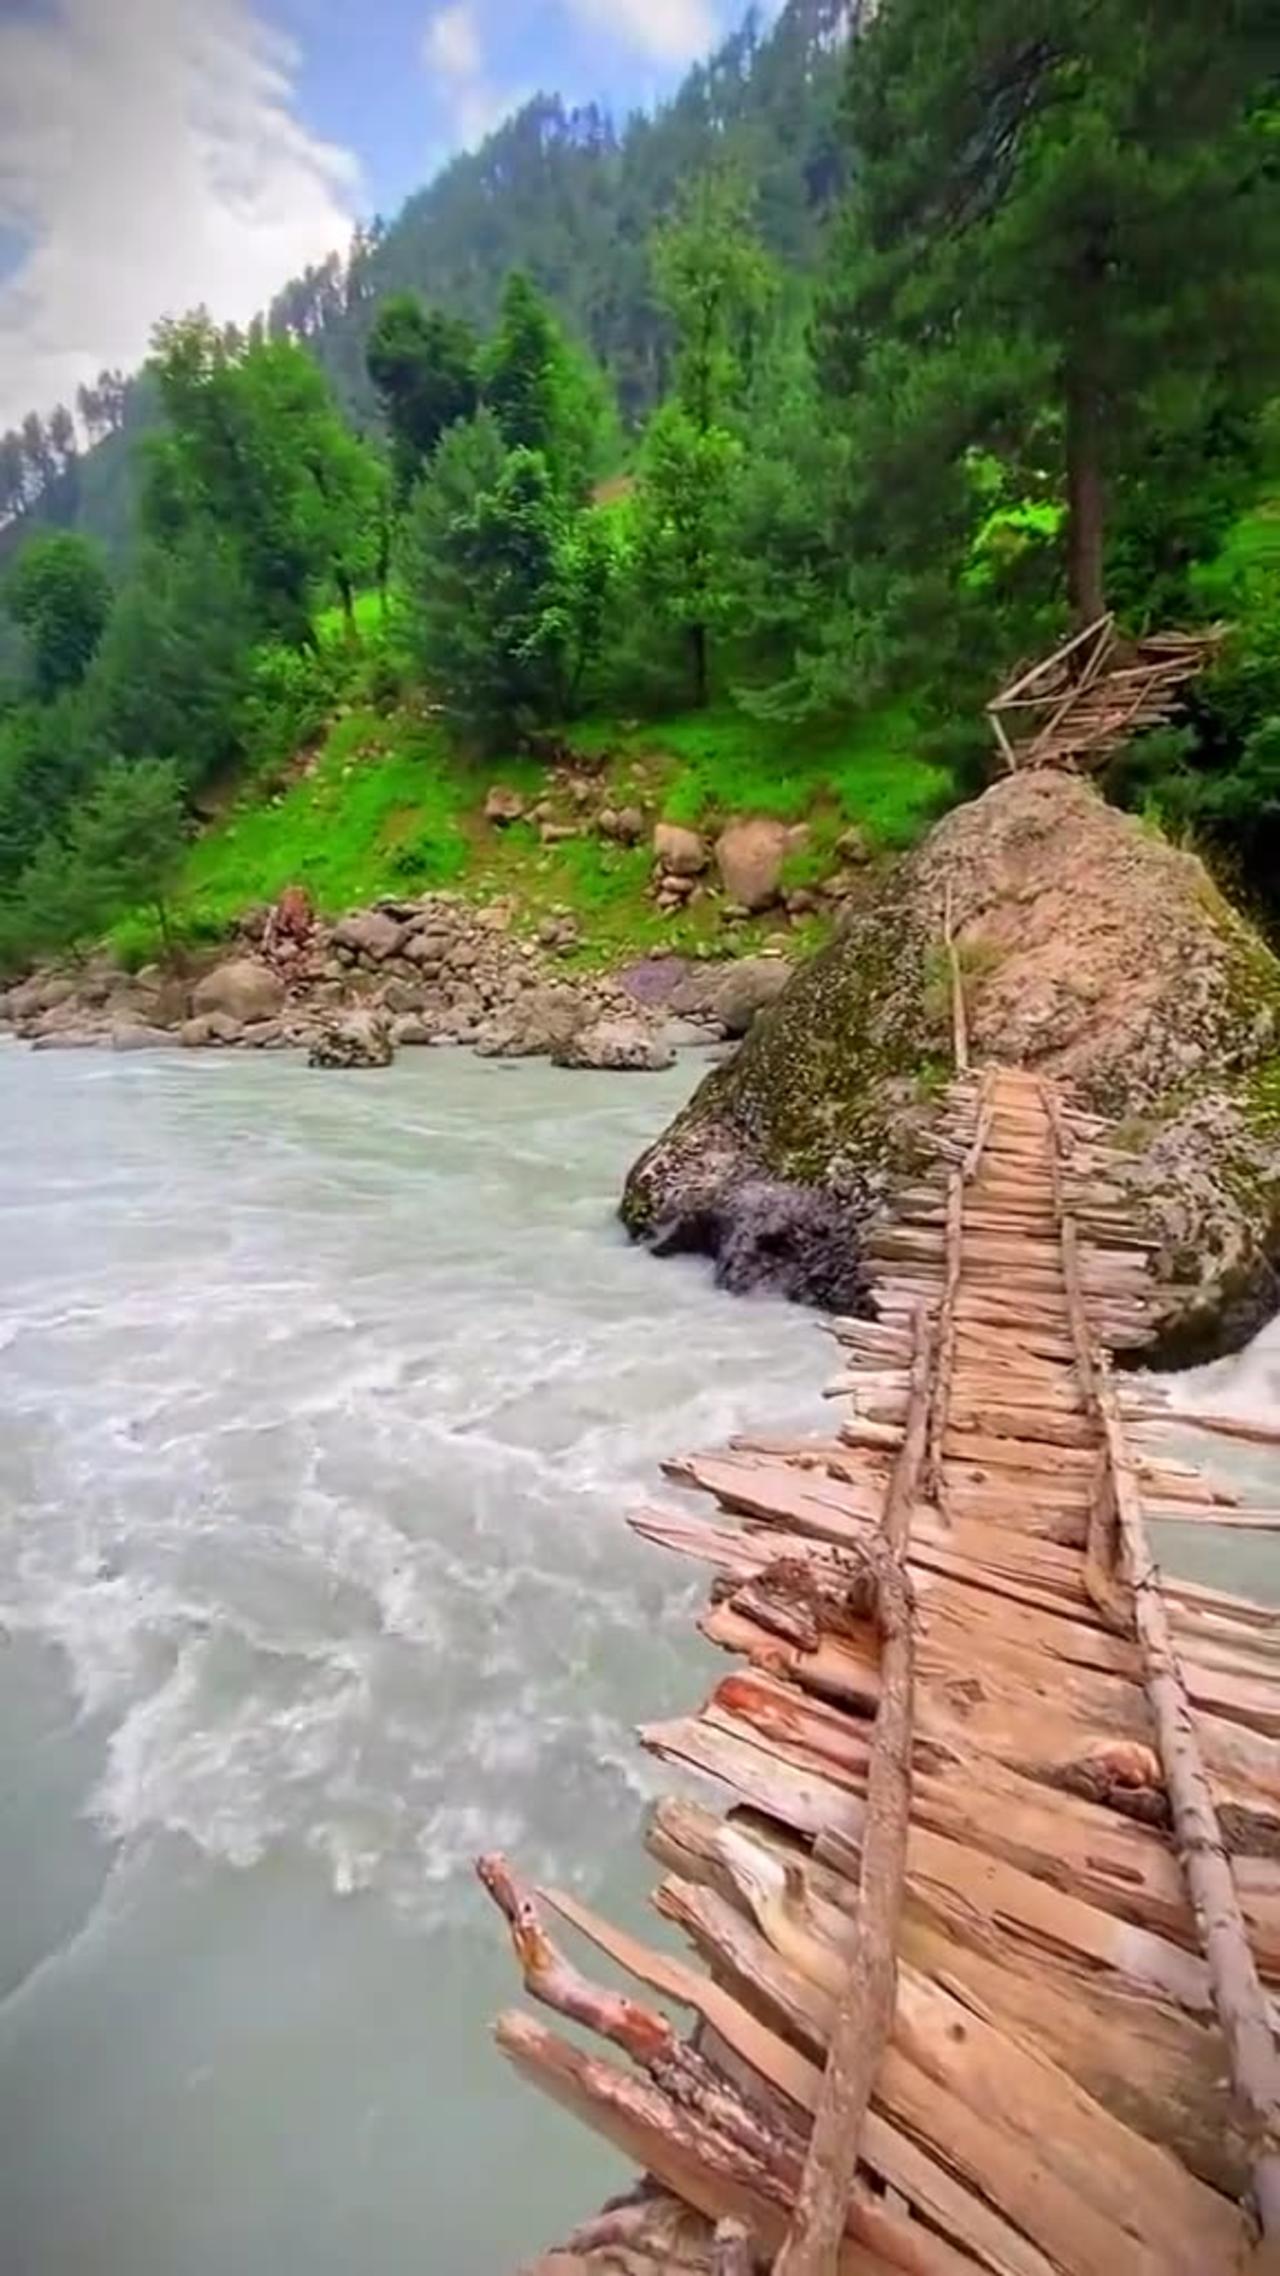 Kashmir is most beautiful place in Pakistan